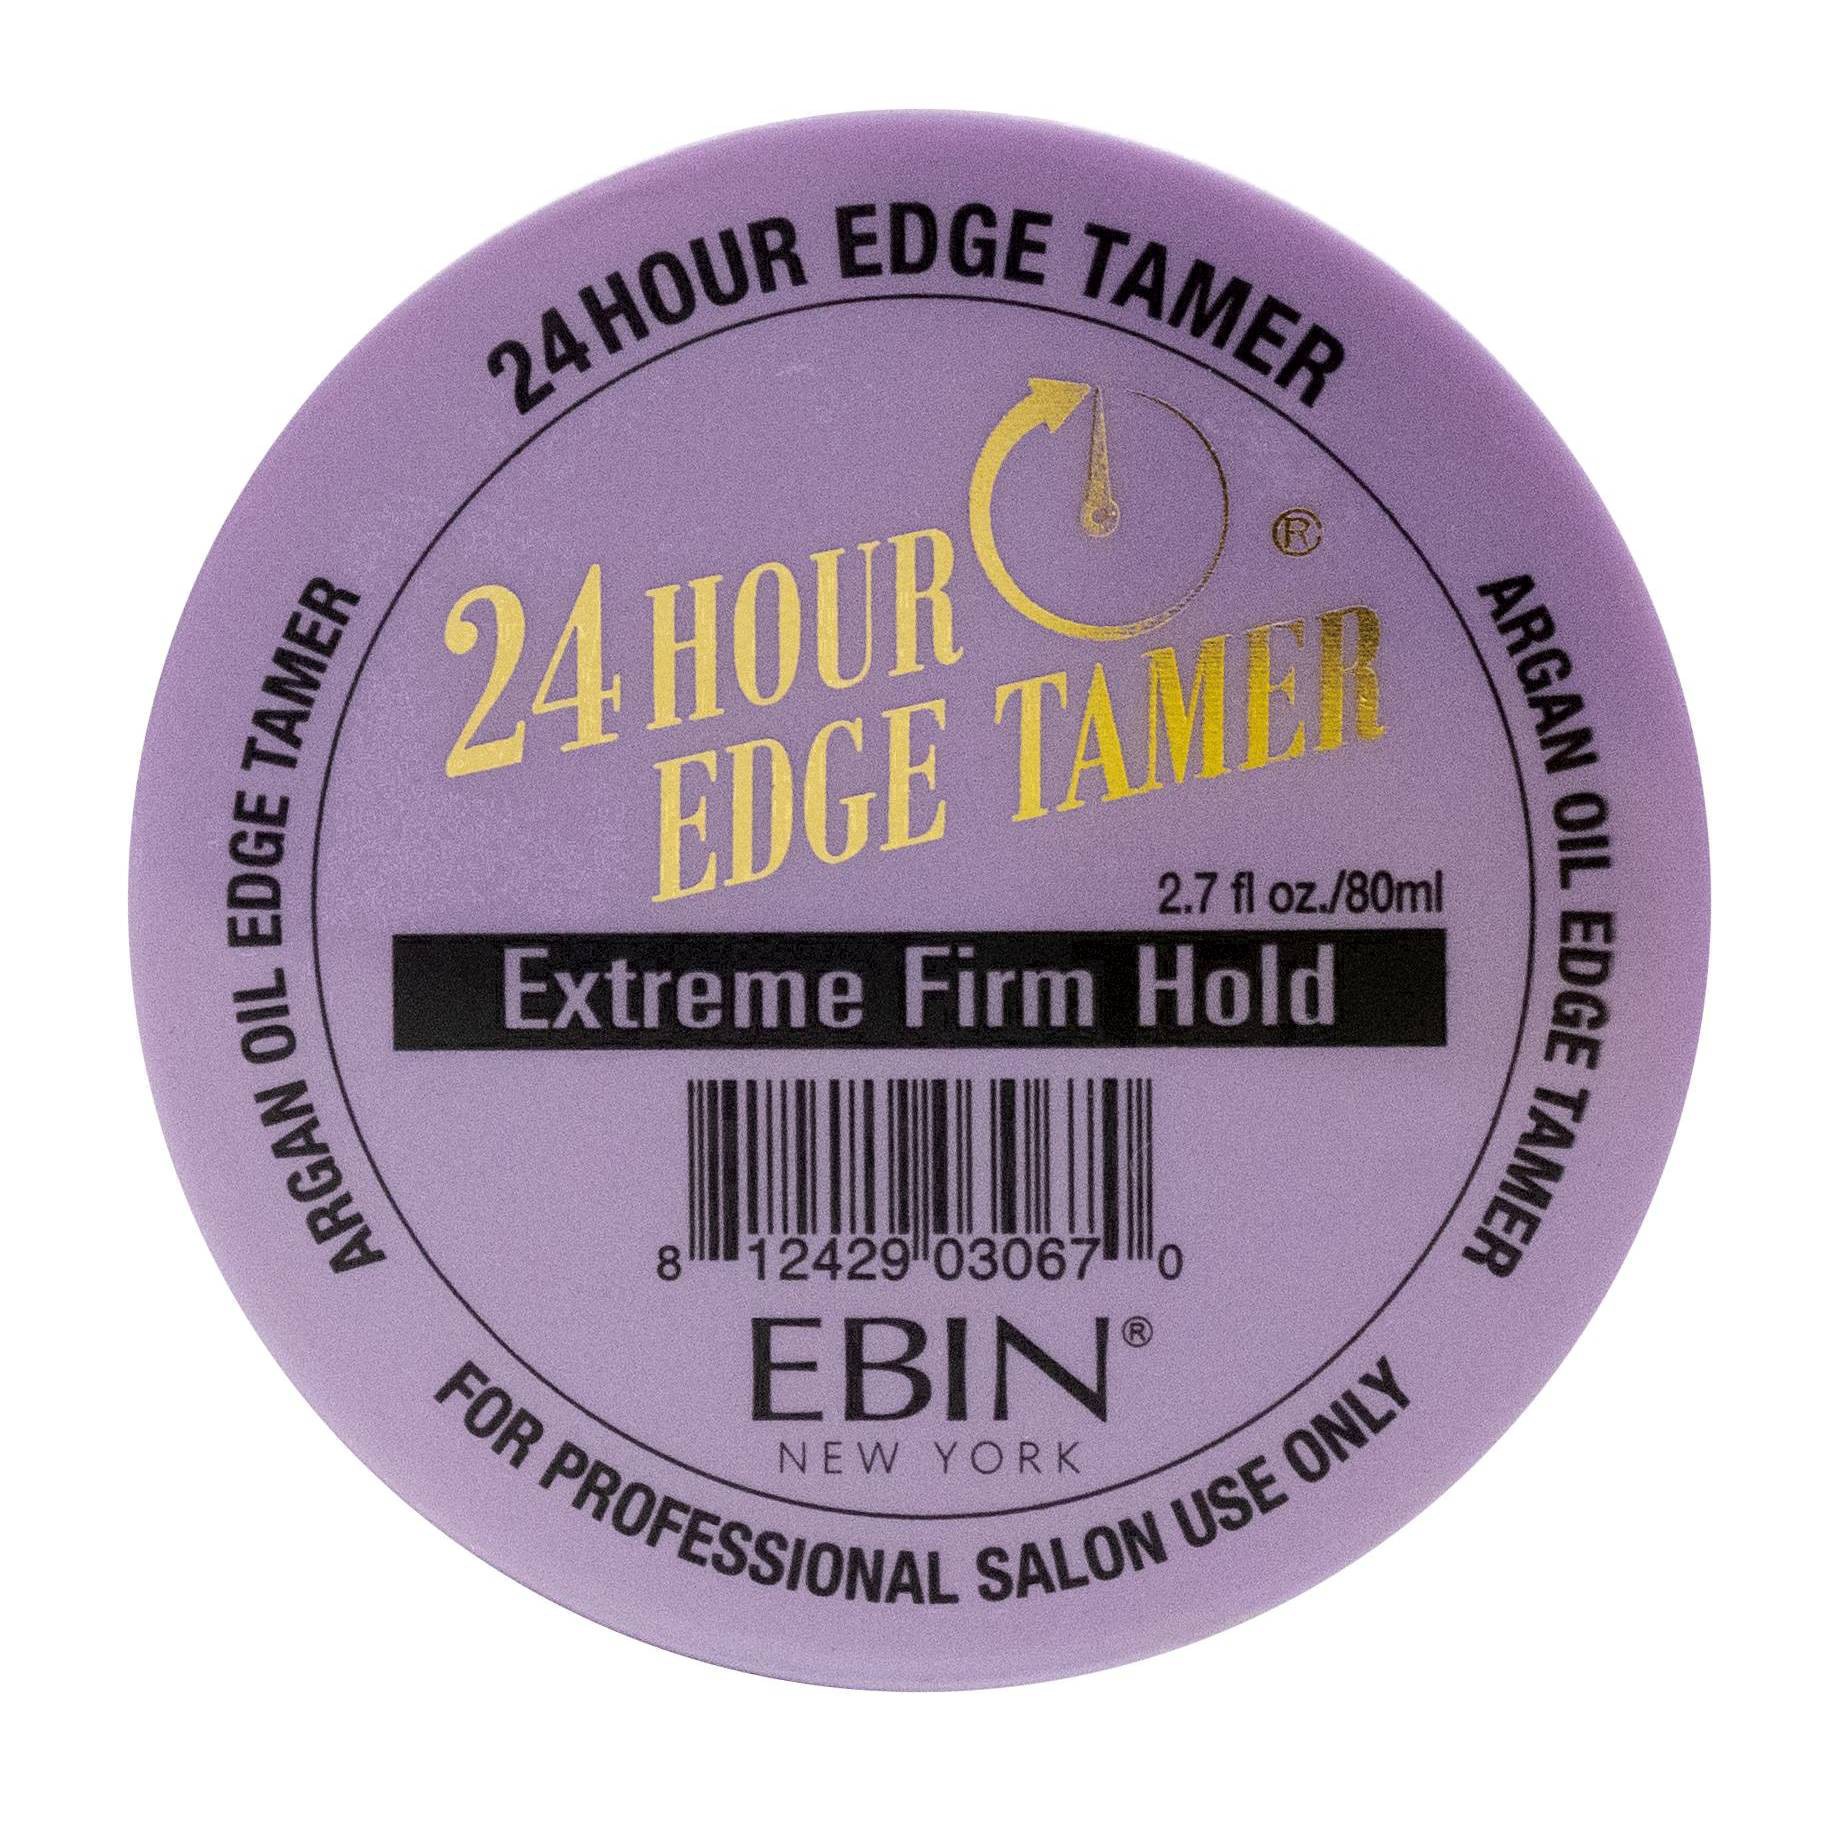 slide 3 of 53, EBIN Edge Tamer Extreme Firm Hold, 2.7 oz